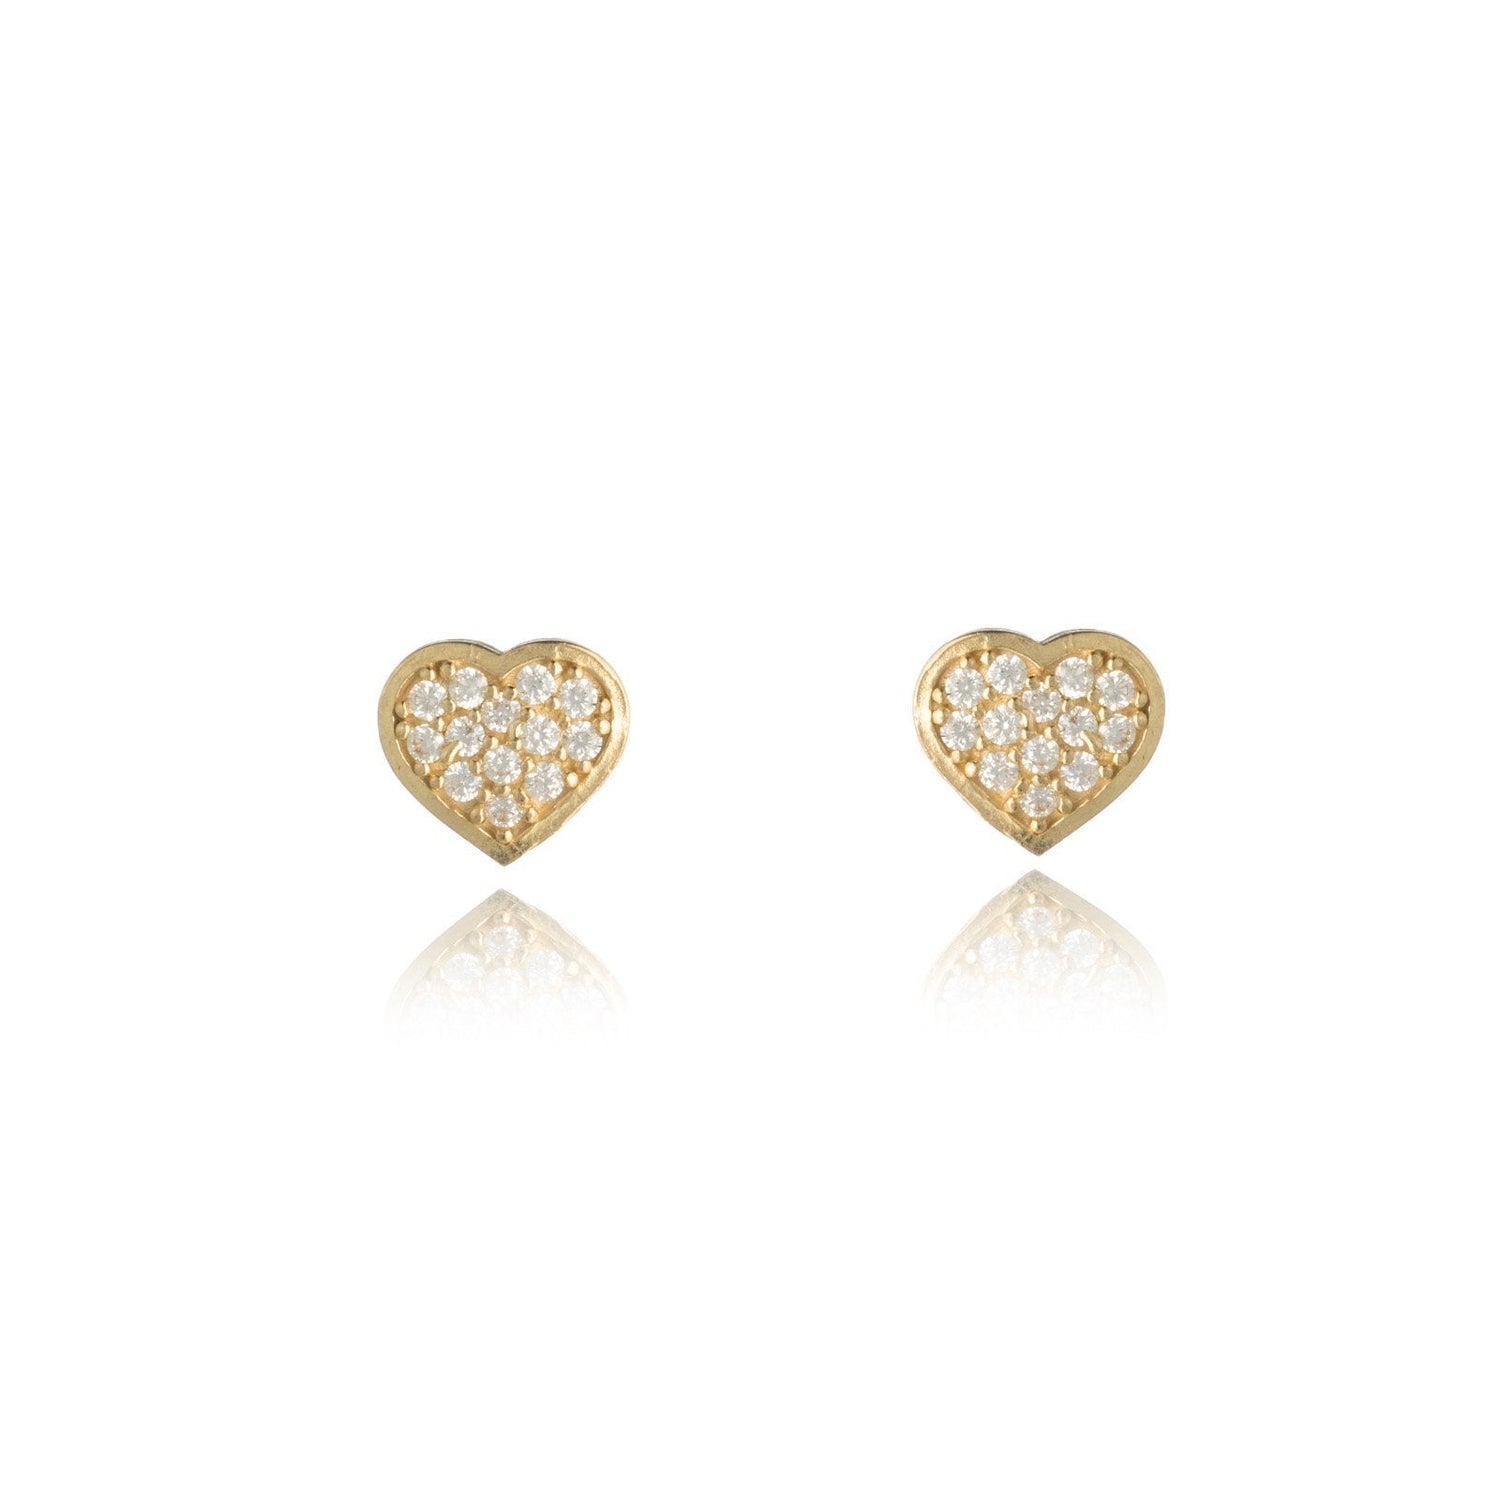 10k Yellow Gold CZ Cubic Zirconia Heart Earring for women and girls